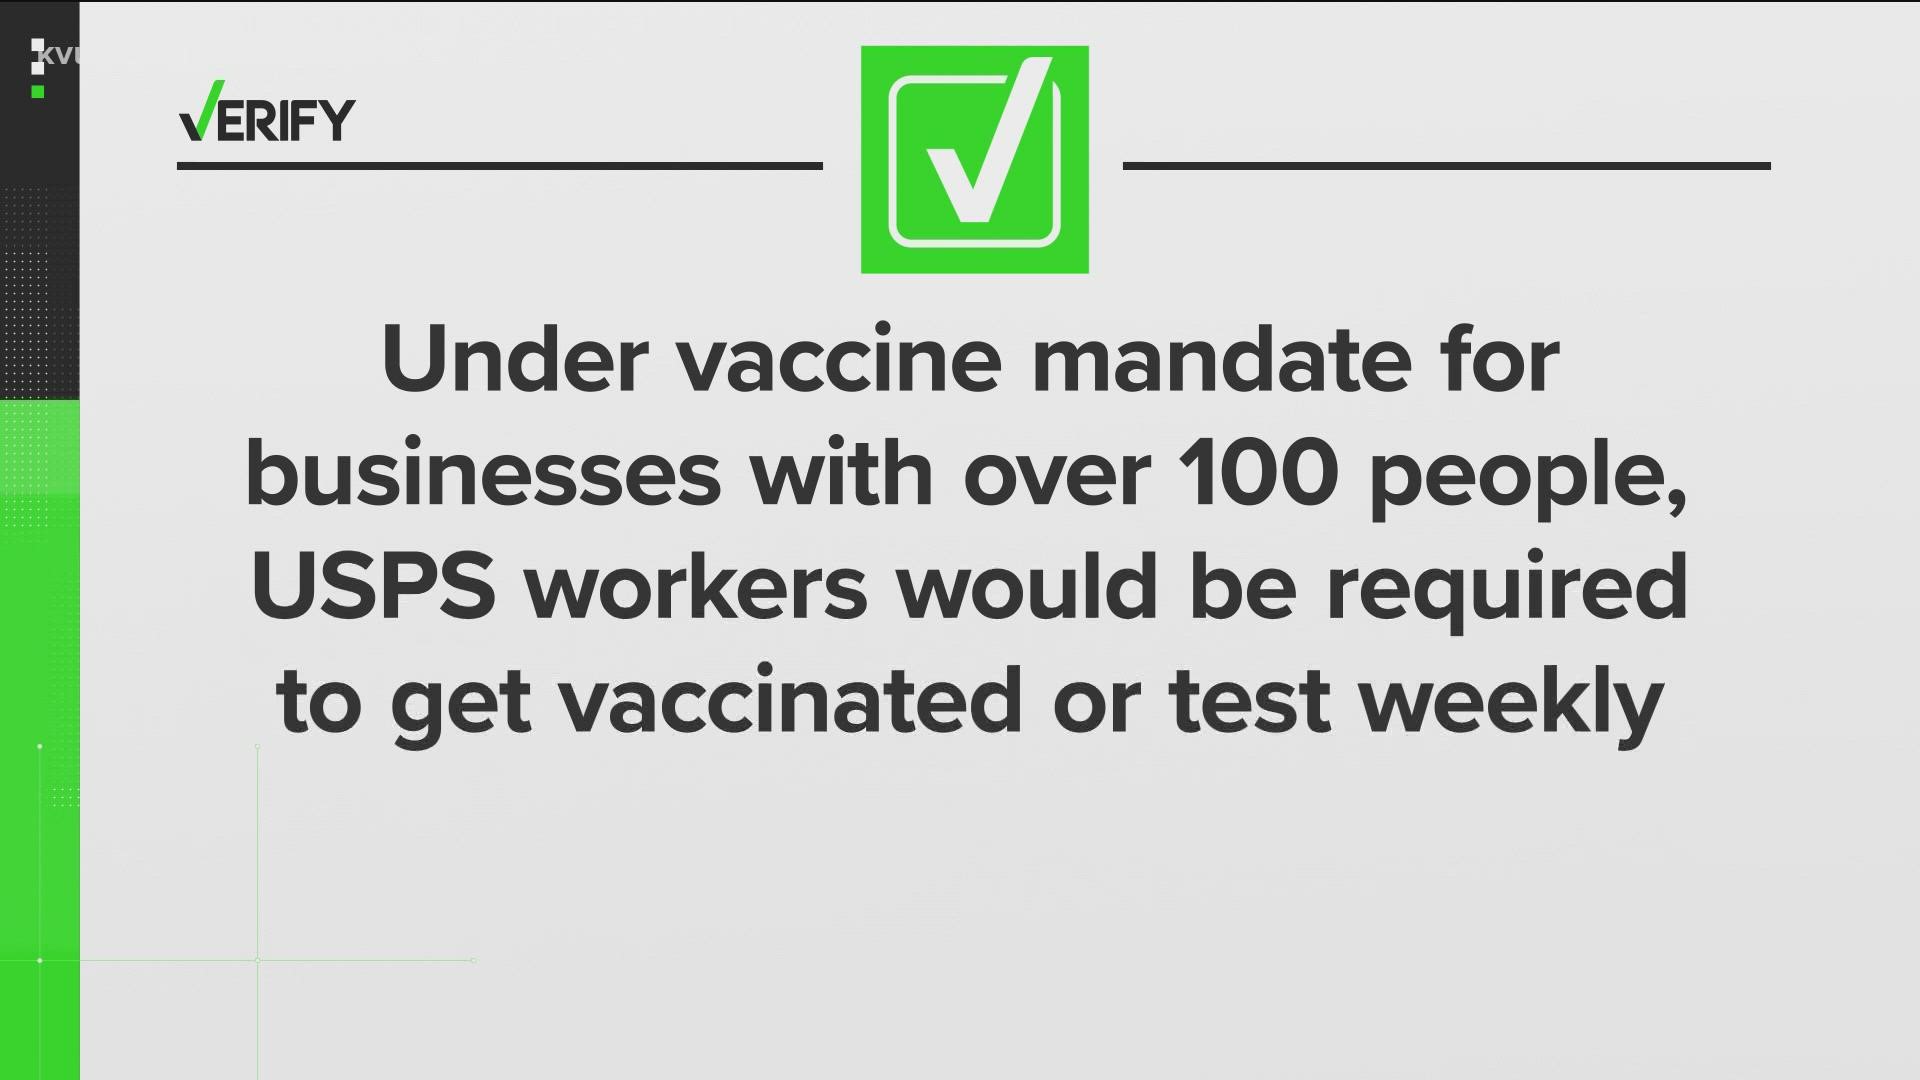 President Joe Biden announced new COVID-19 vaccine mandates on Thursday, Sept. 9.